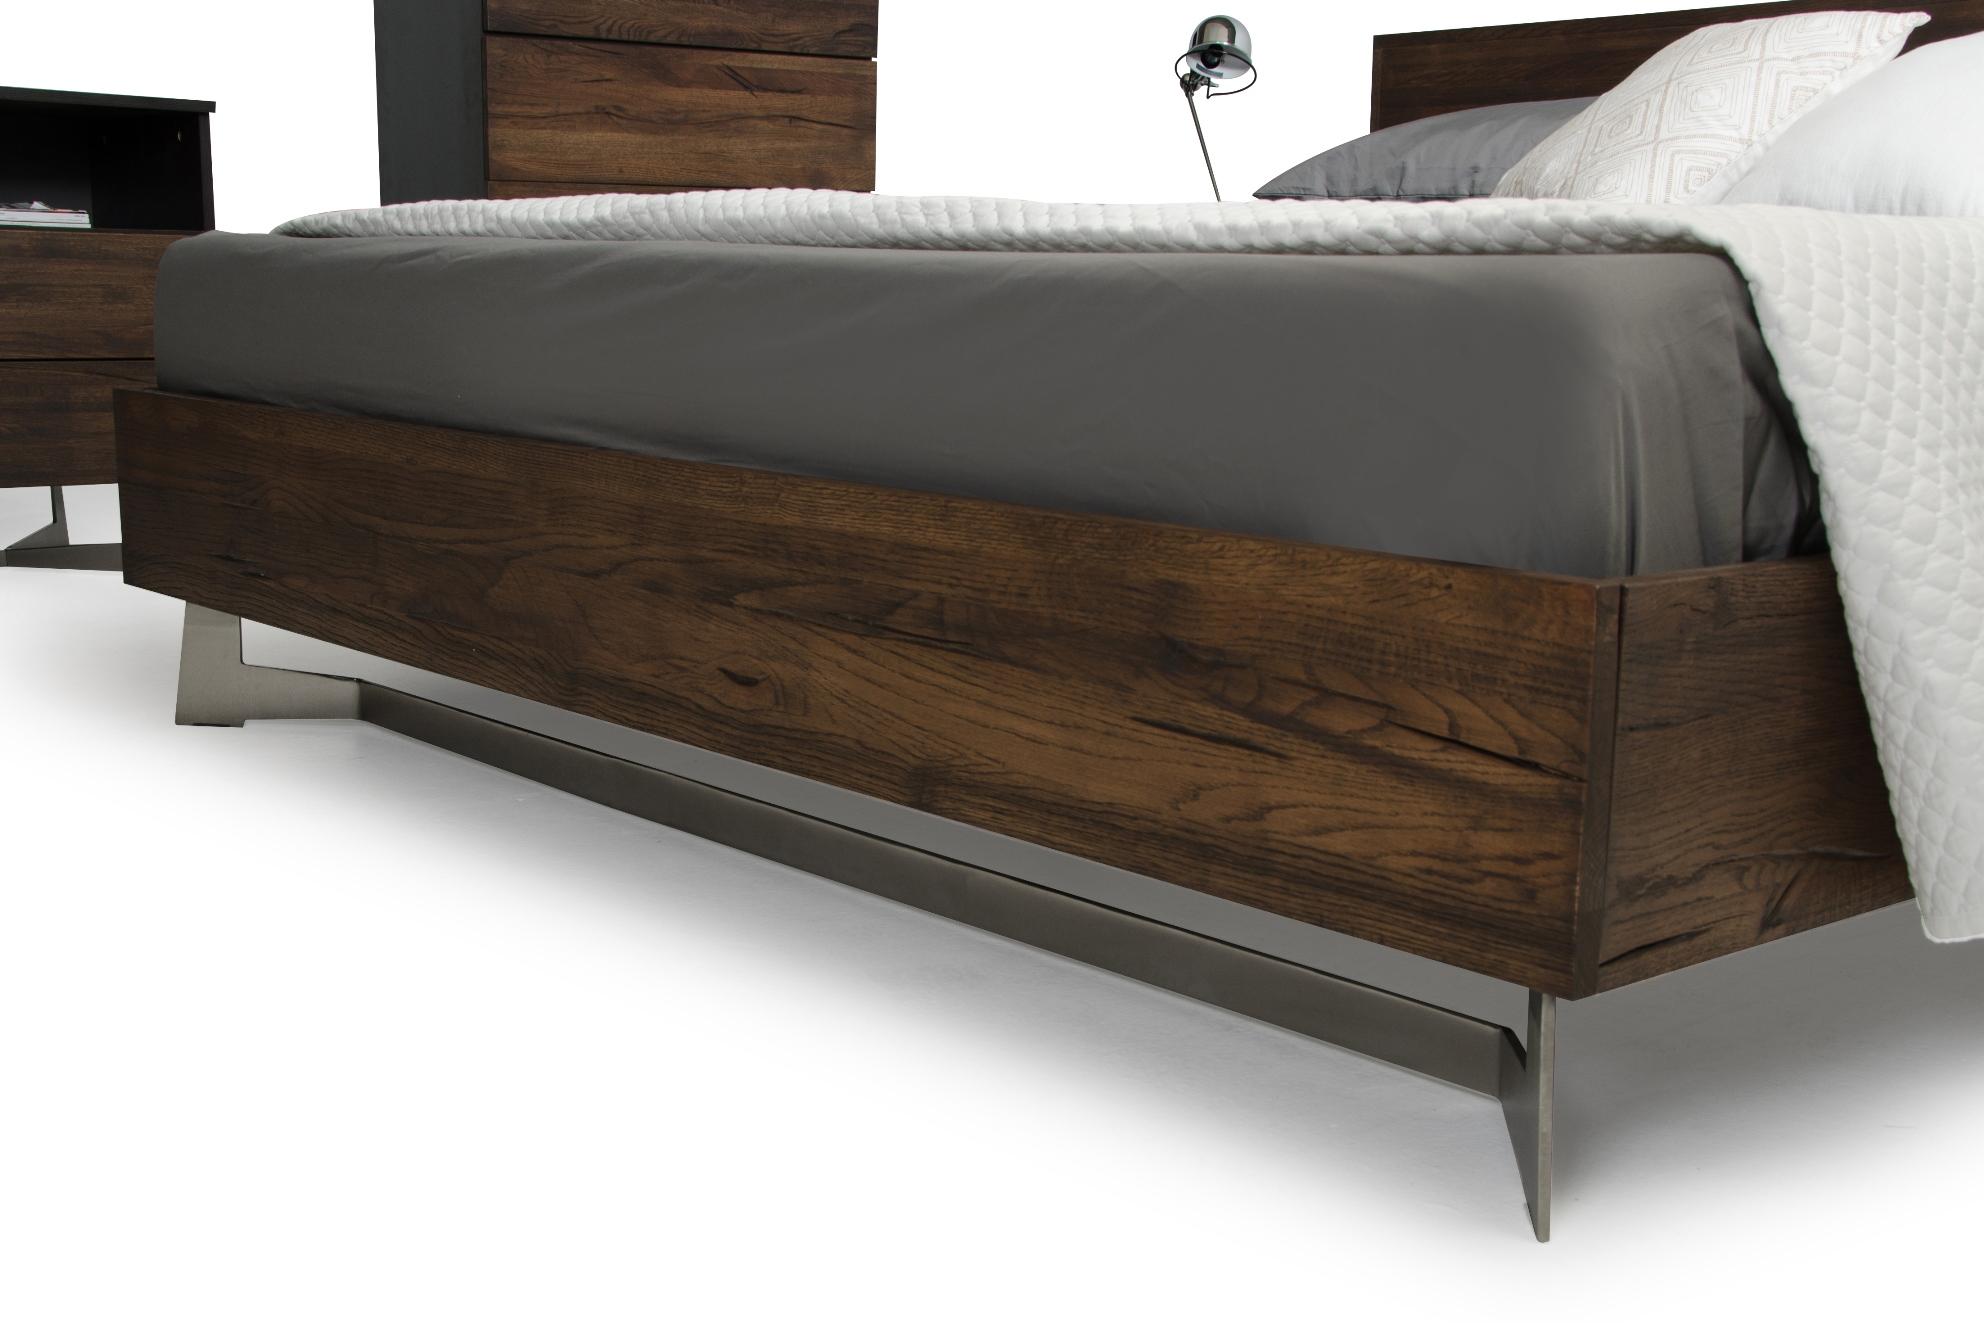 

    
VGEDWHARTON-BED-EK-Set-2 VIG Furniture Platform Bedroom Set
